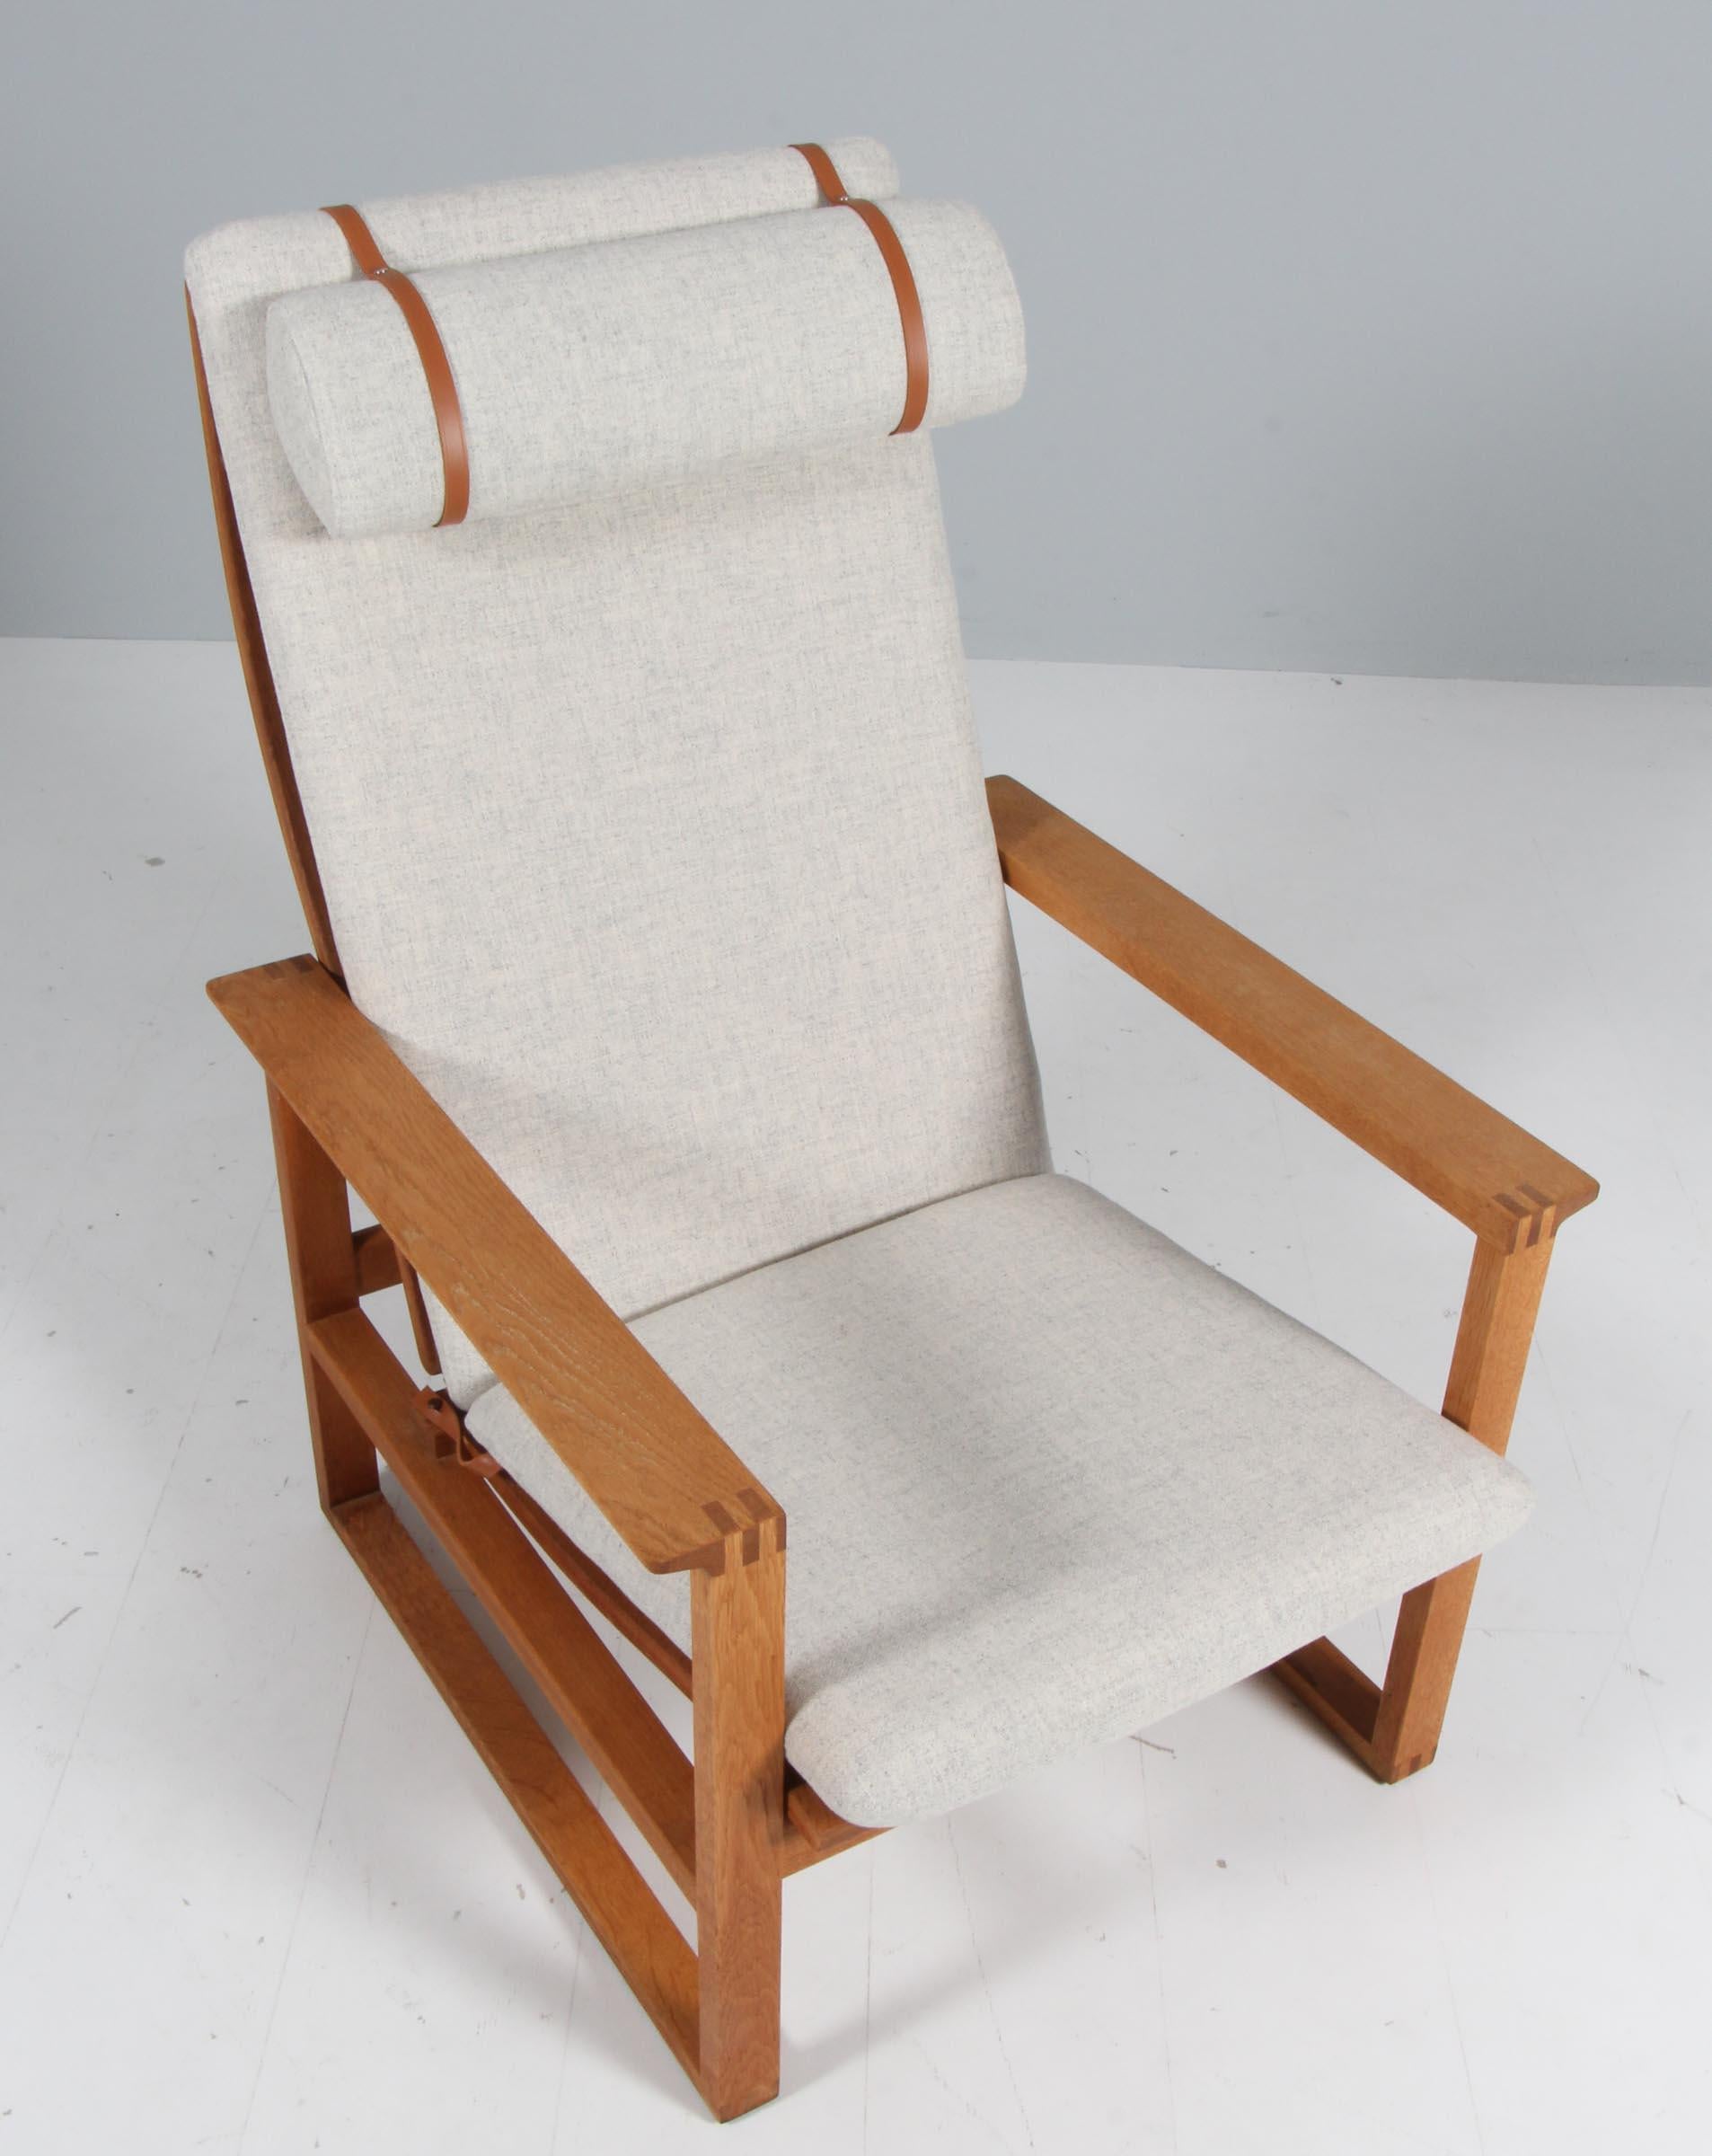 Ein Sessel von Børge Mogensen aus dem Jahr 1956 mit der Modellnummer 2254 für Fredericia Stolefabrik. Kubische Rahmen aus massiver Eiche mit Keilzinkenverbindungen.

Neu gepolstert mit Tonus Wolle von Kvadrat. Das Sitzkissen kann mit einem am Rahmen